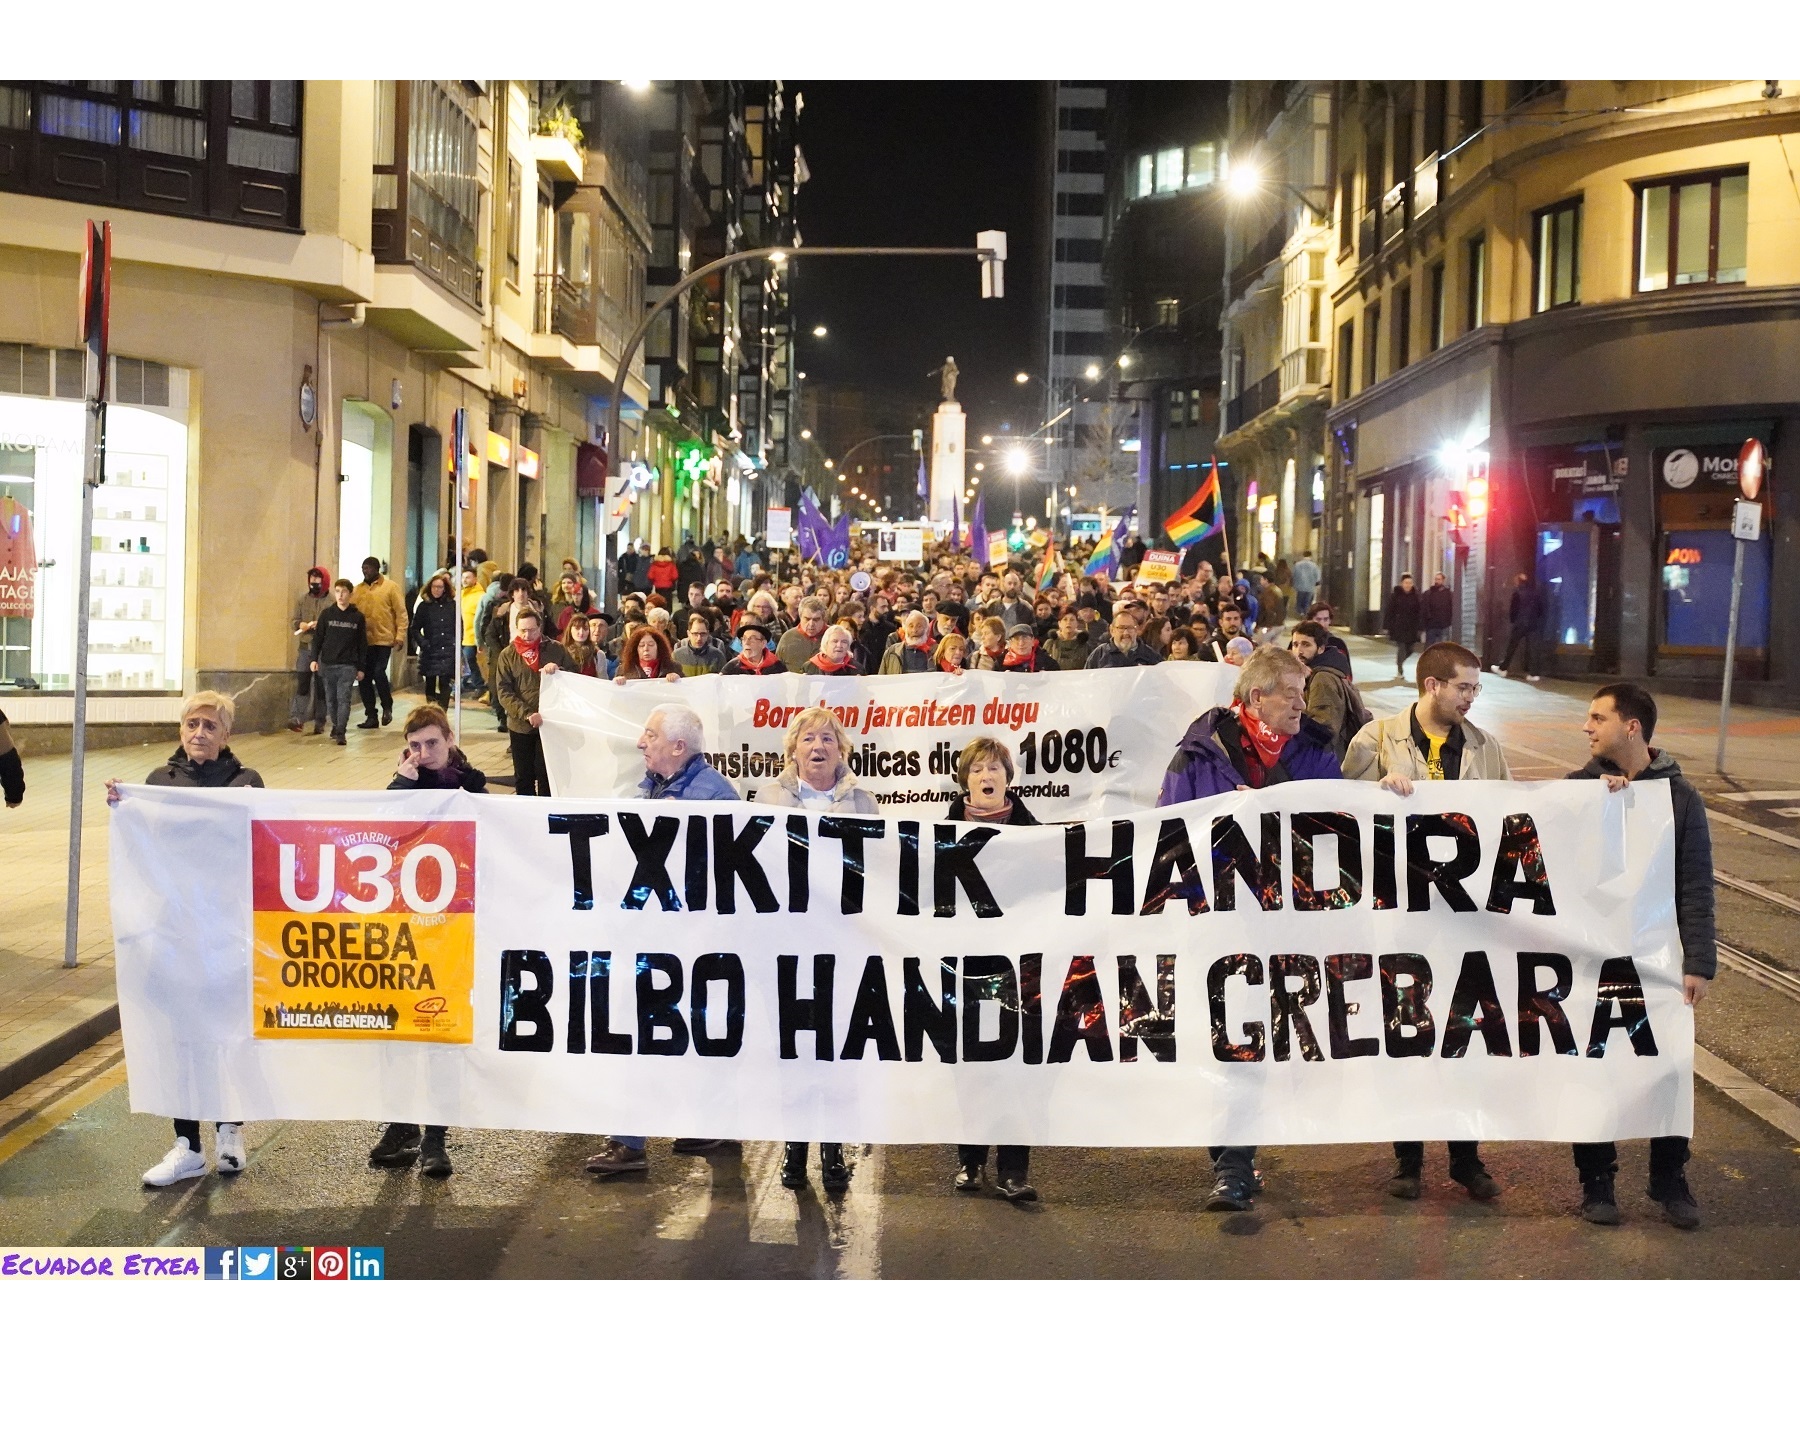 huelga-general-30-enero-greba-orokorra-bilbao-carta-derechos-sociales-euskal-herria-feminista-pensionistas